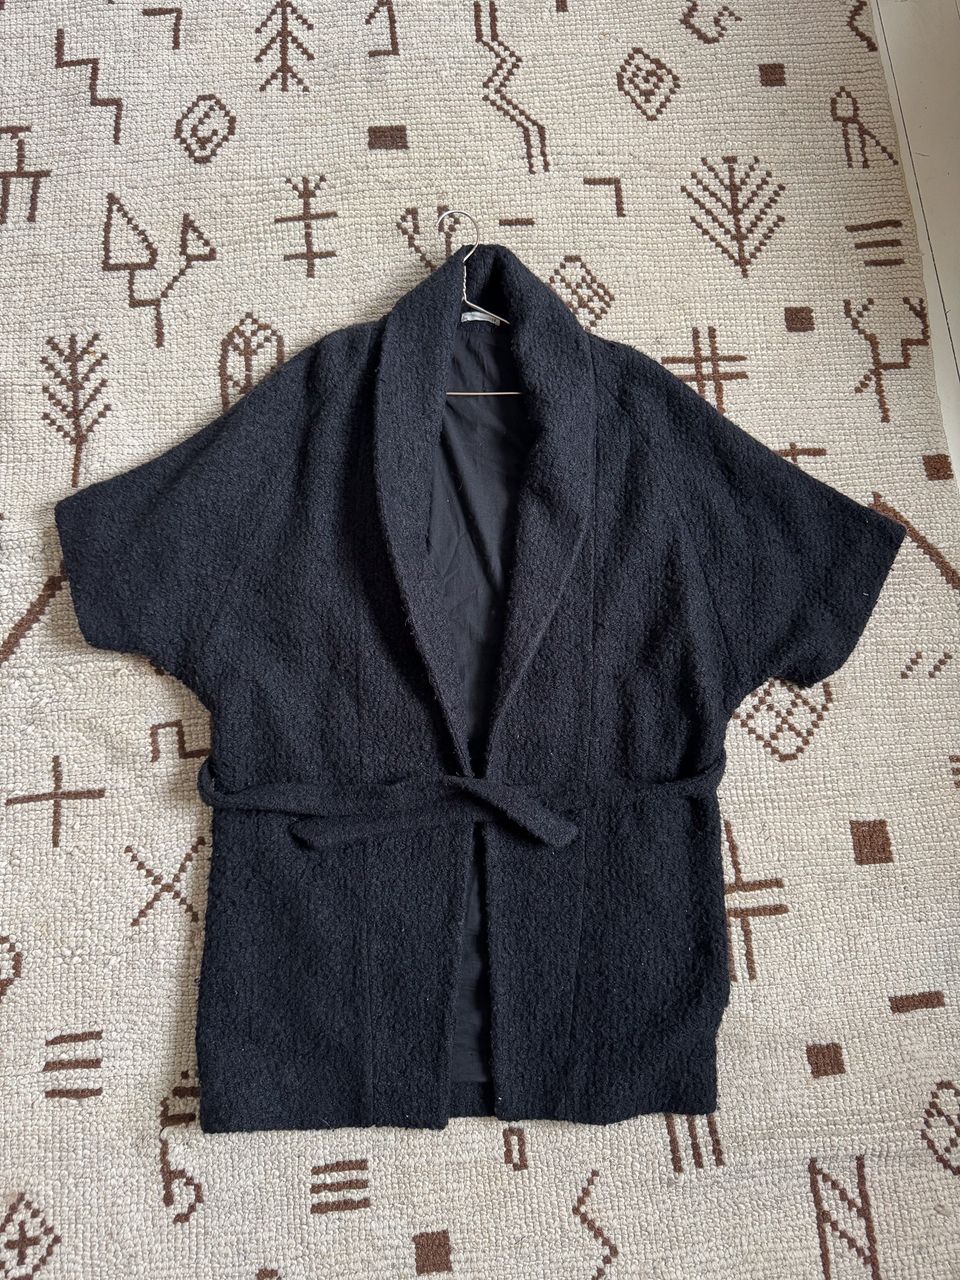 Kimonotyylinen takki